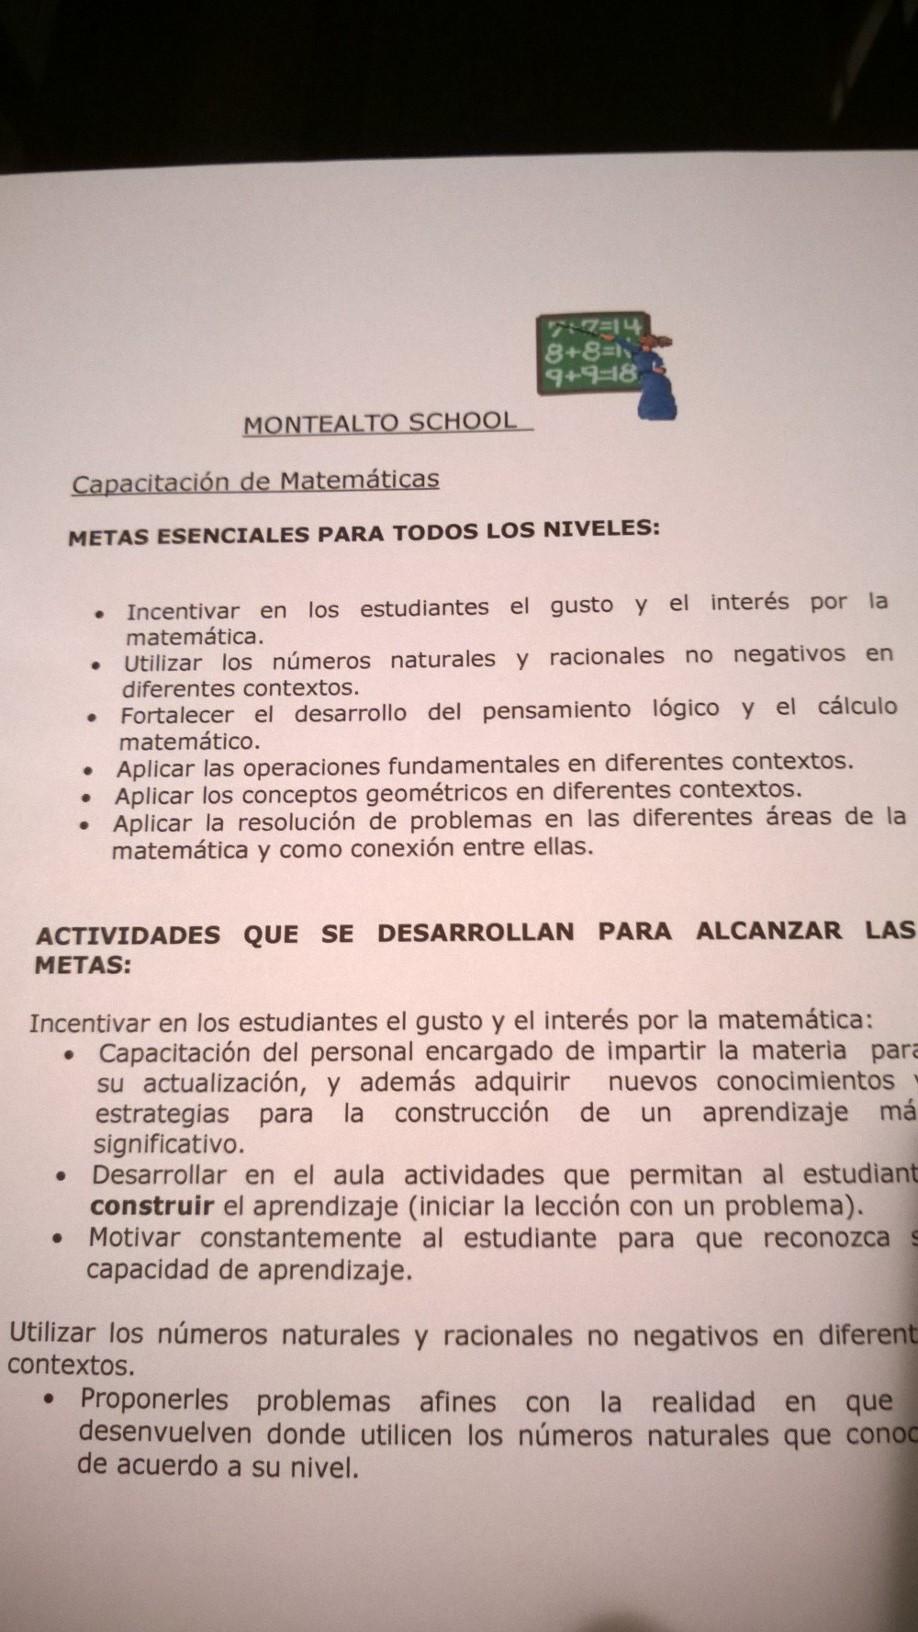 186 Oviedo Un hecho importante que ha facilitado el proceso de implementación del currículo en mención, es contar con un docente miembro del equipo del Proyecto Reforma de la Educación Matemática en